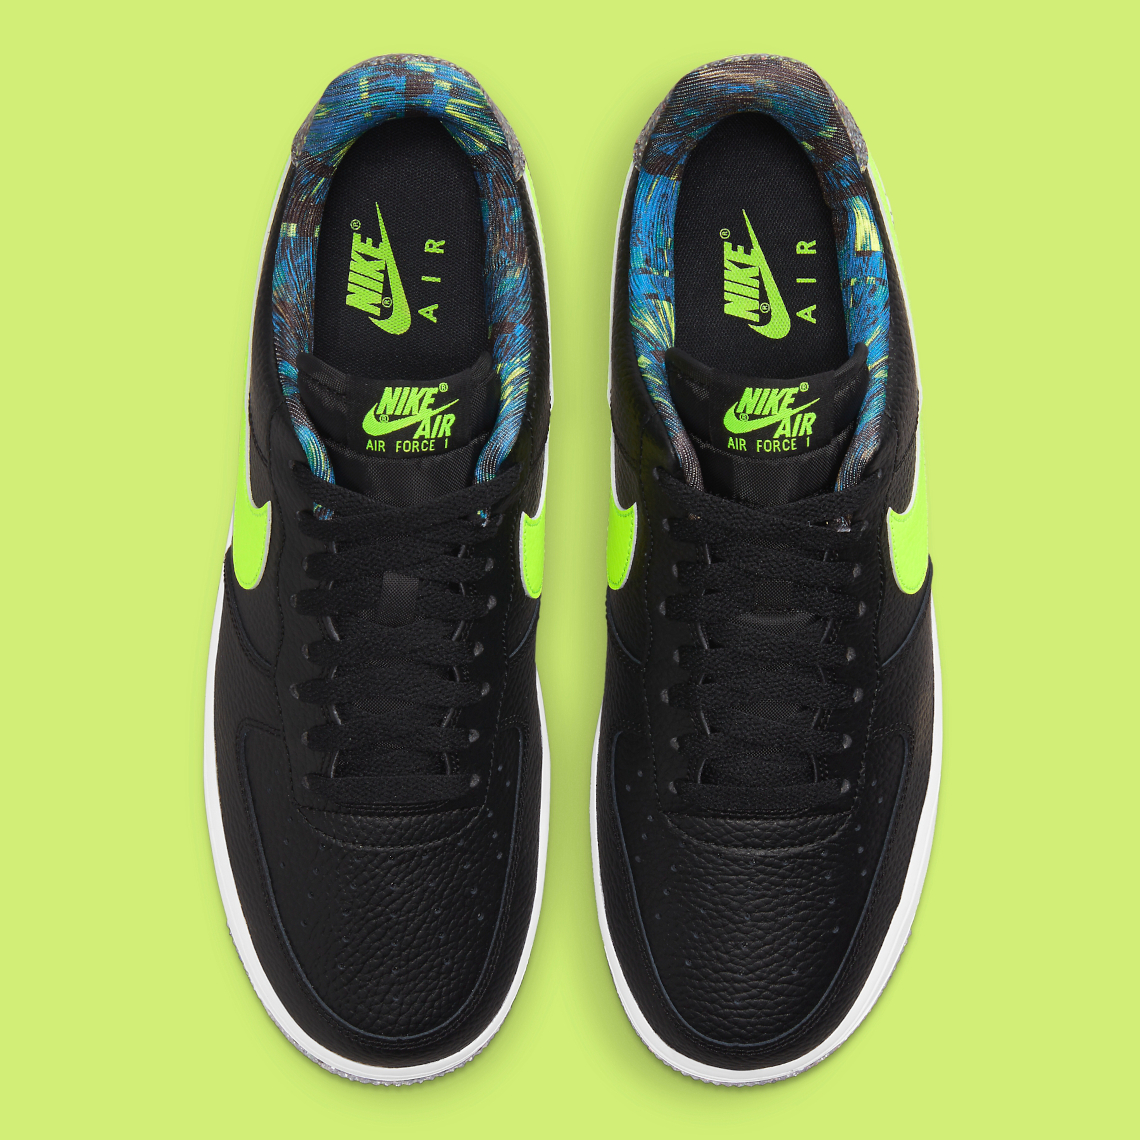 Nike Air Force 1 Grind Black Volt DM9098-001 | SneakerNews.com